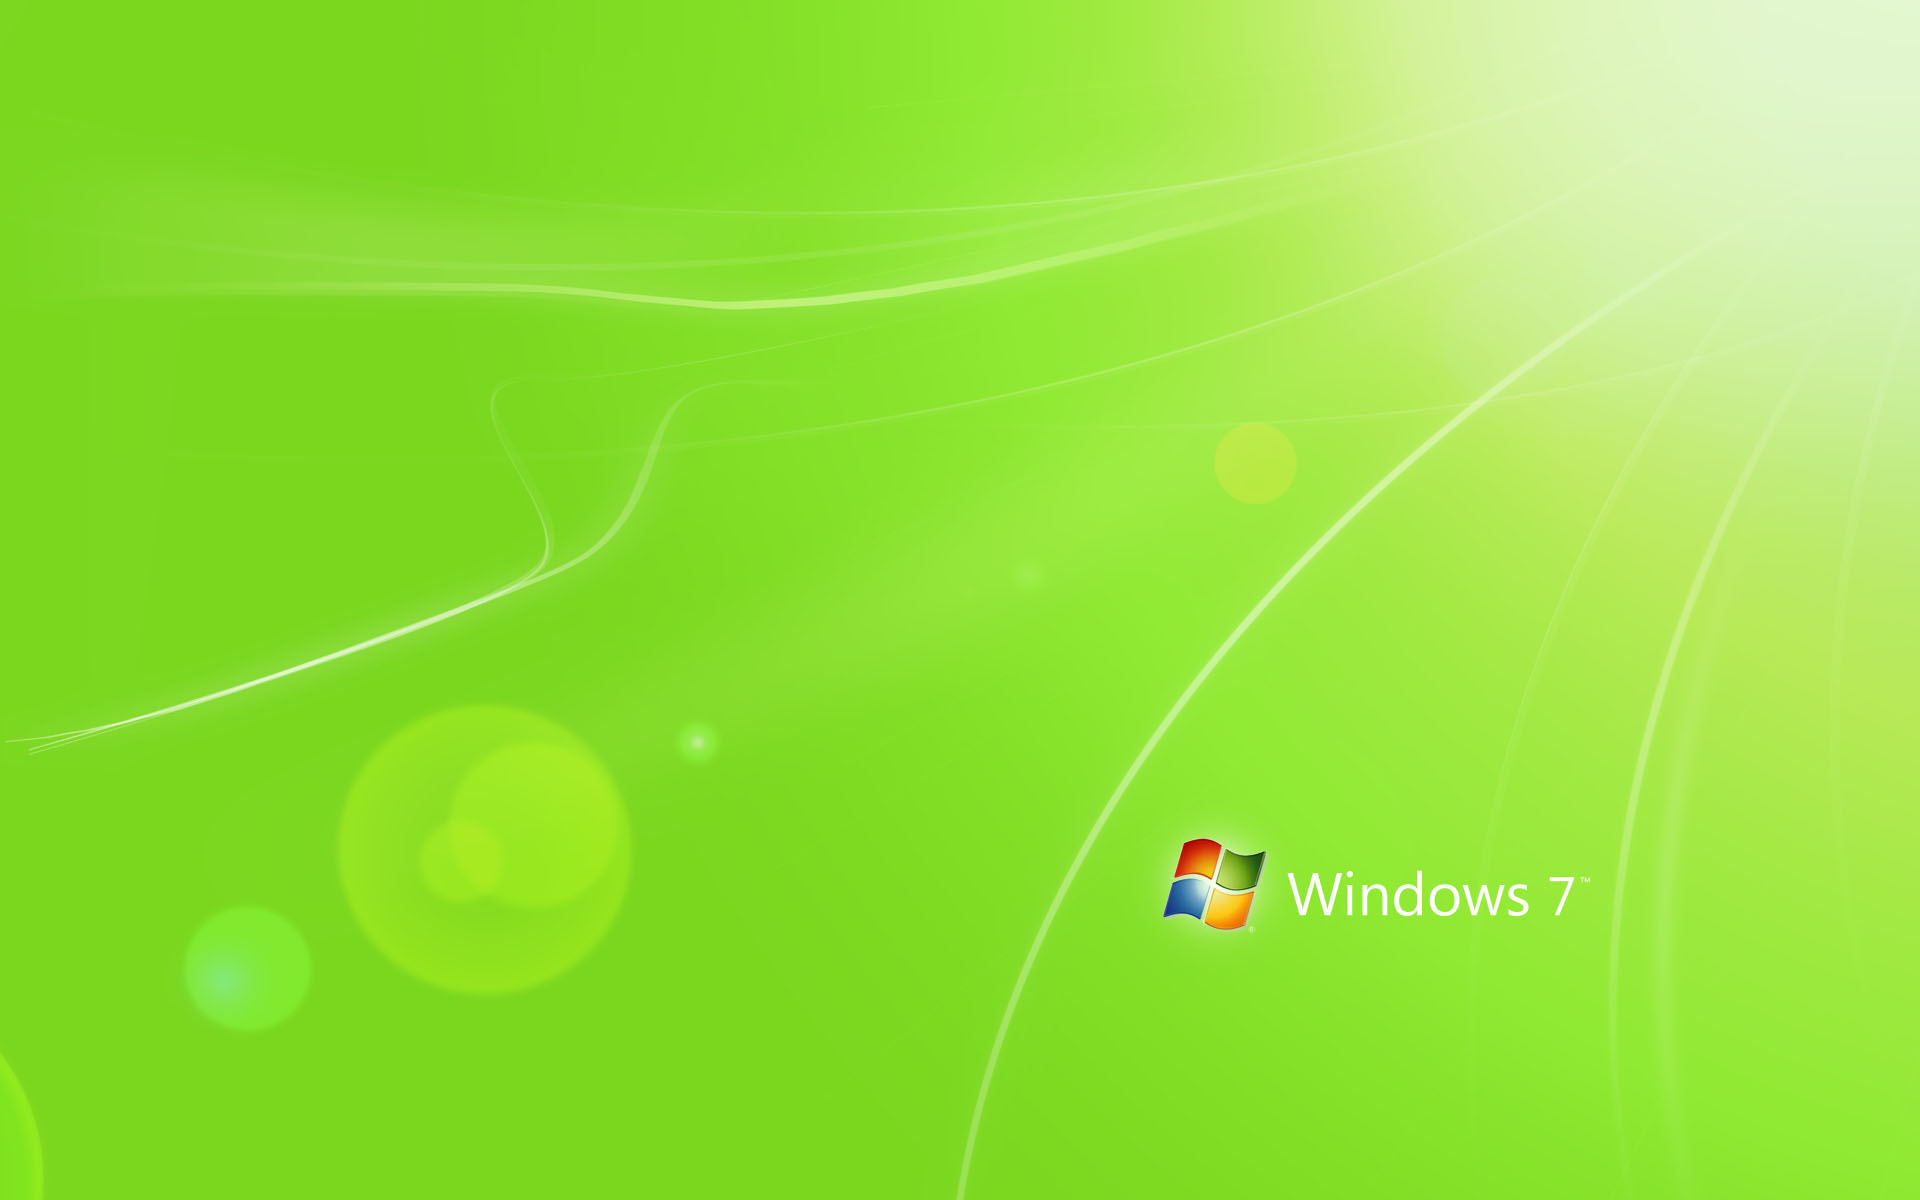 Hình nền Windows 7 chất lượng cao với màu sắc tươi sáng và độ nét tuyệt đối sẽ khiến cho bạn không muốn rời mắt khỏi màn hình của mình. Hãy tải về ngay để trải nghiệm sự tuyệt vời của chúng.